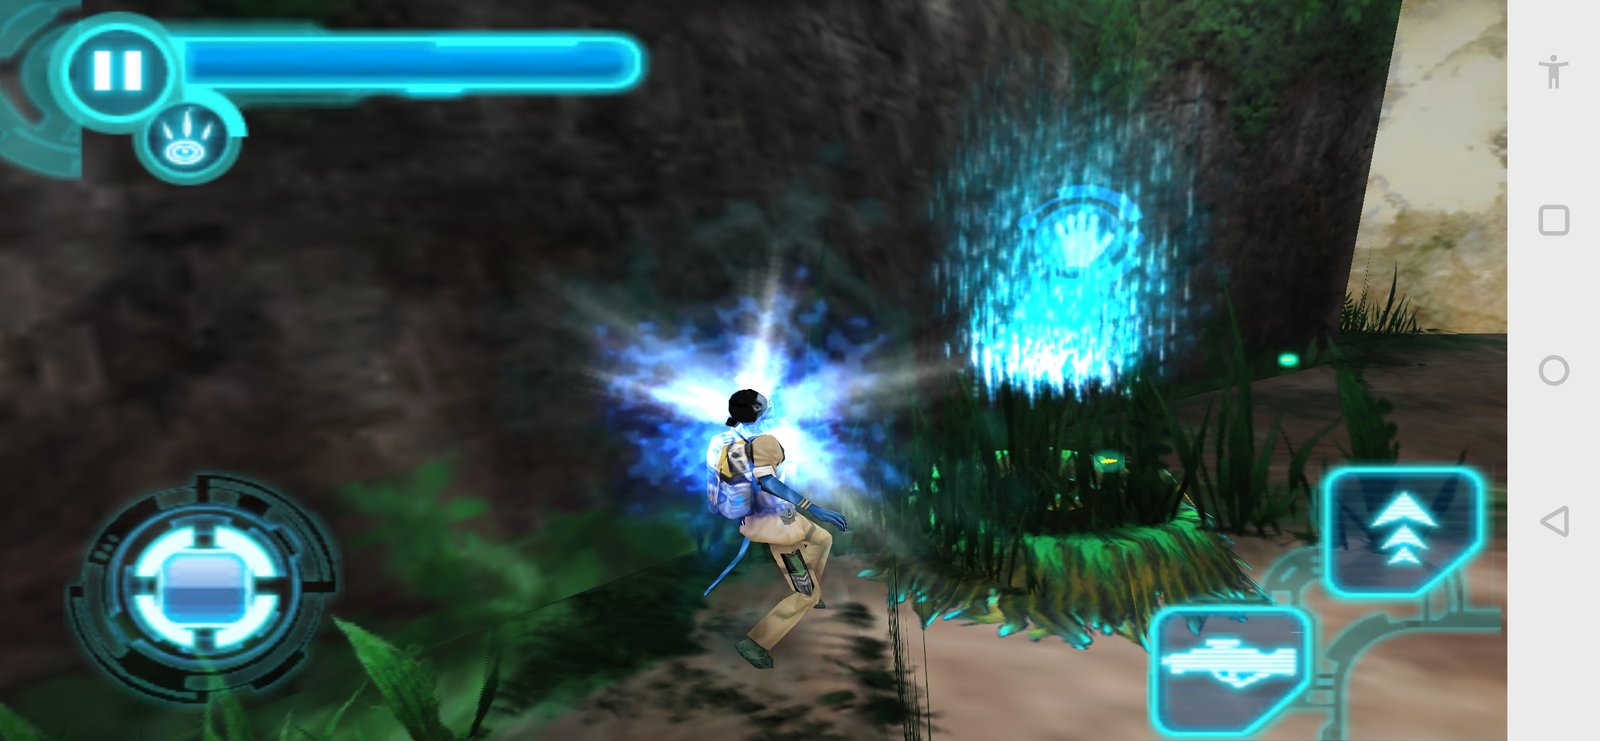 Avatar Mobile Game Android: Avatar Mobile Game Android - một trong những game mobile đáng chơi nhất năm 2024! Hãy cùng trải nghiệm những màn chiến đấu hoành tráng và những kỹ năng đặc biệt chỉ có trong Avatar.